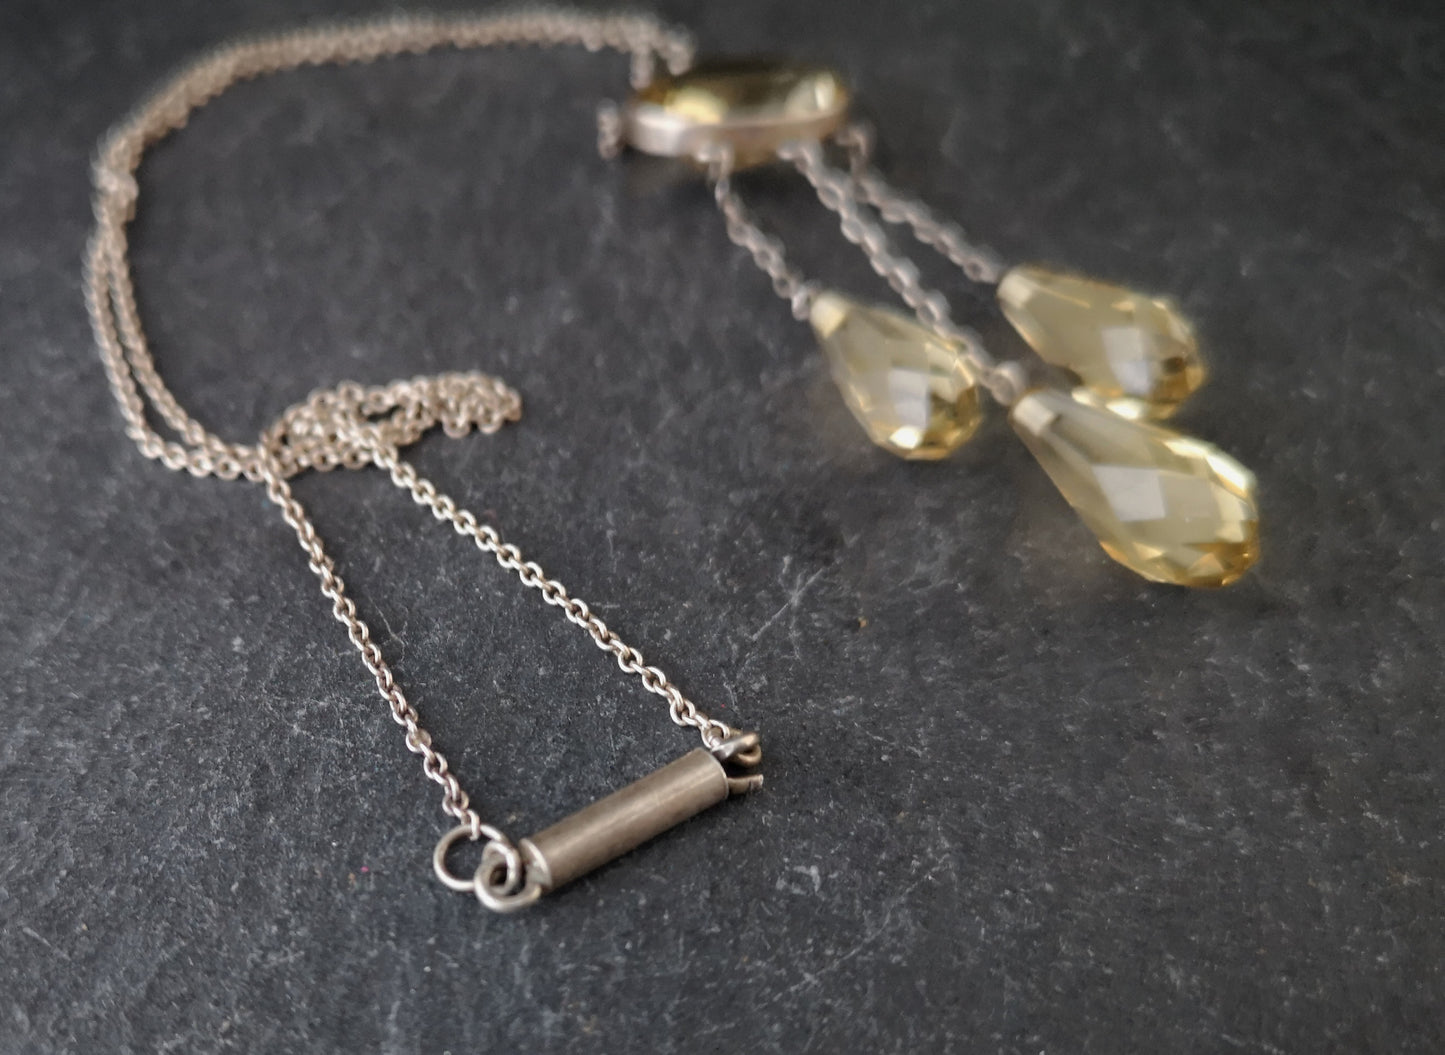 Antique Citrine drop necklace, Art Nouveau